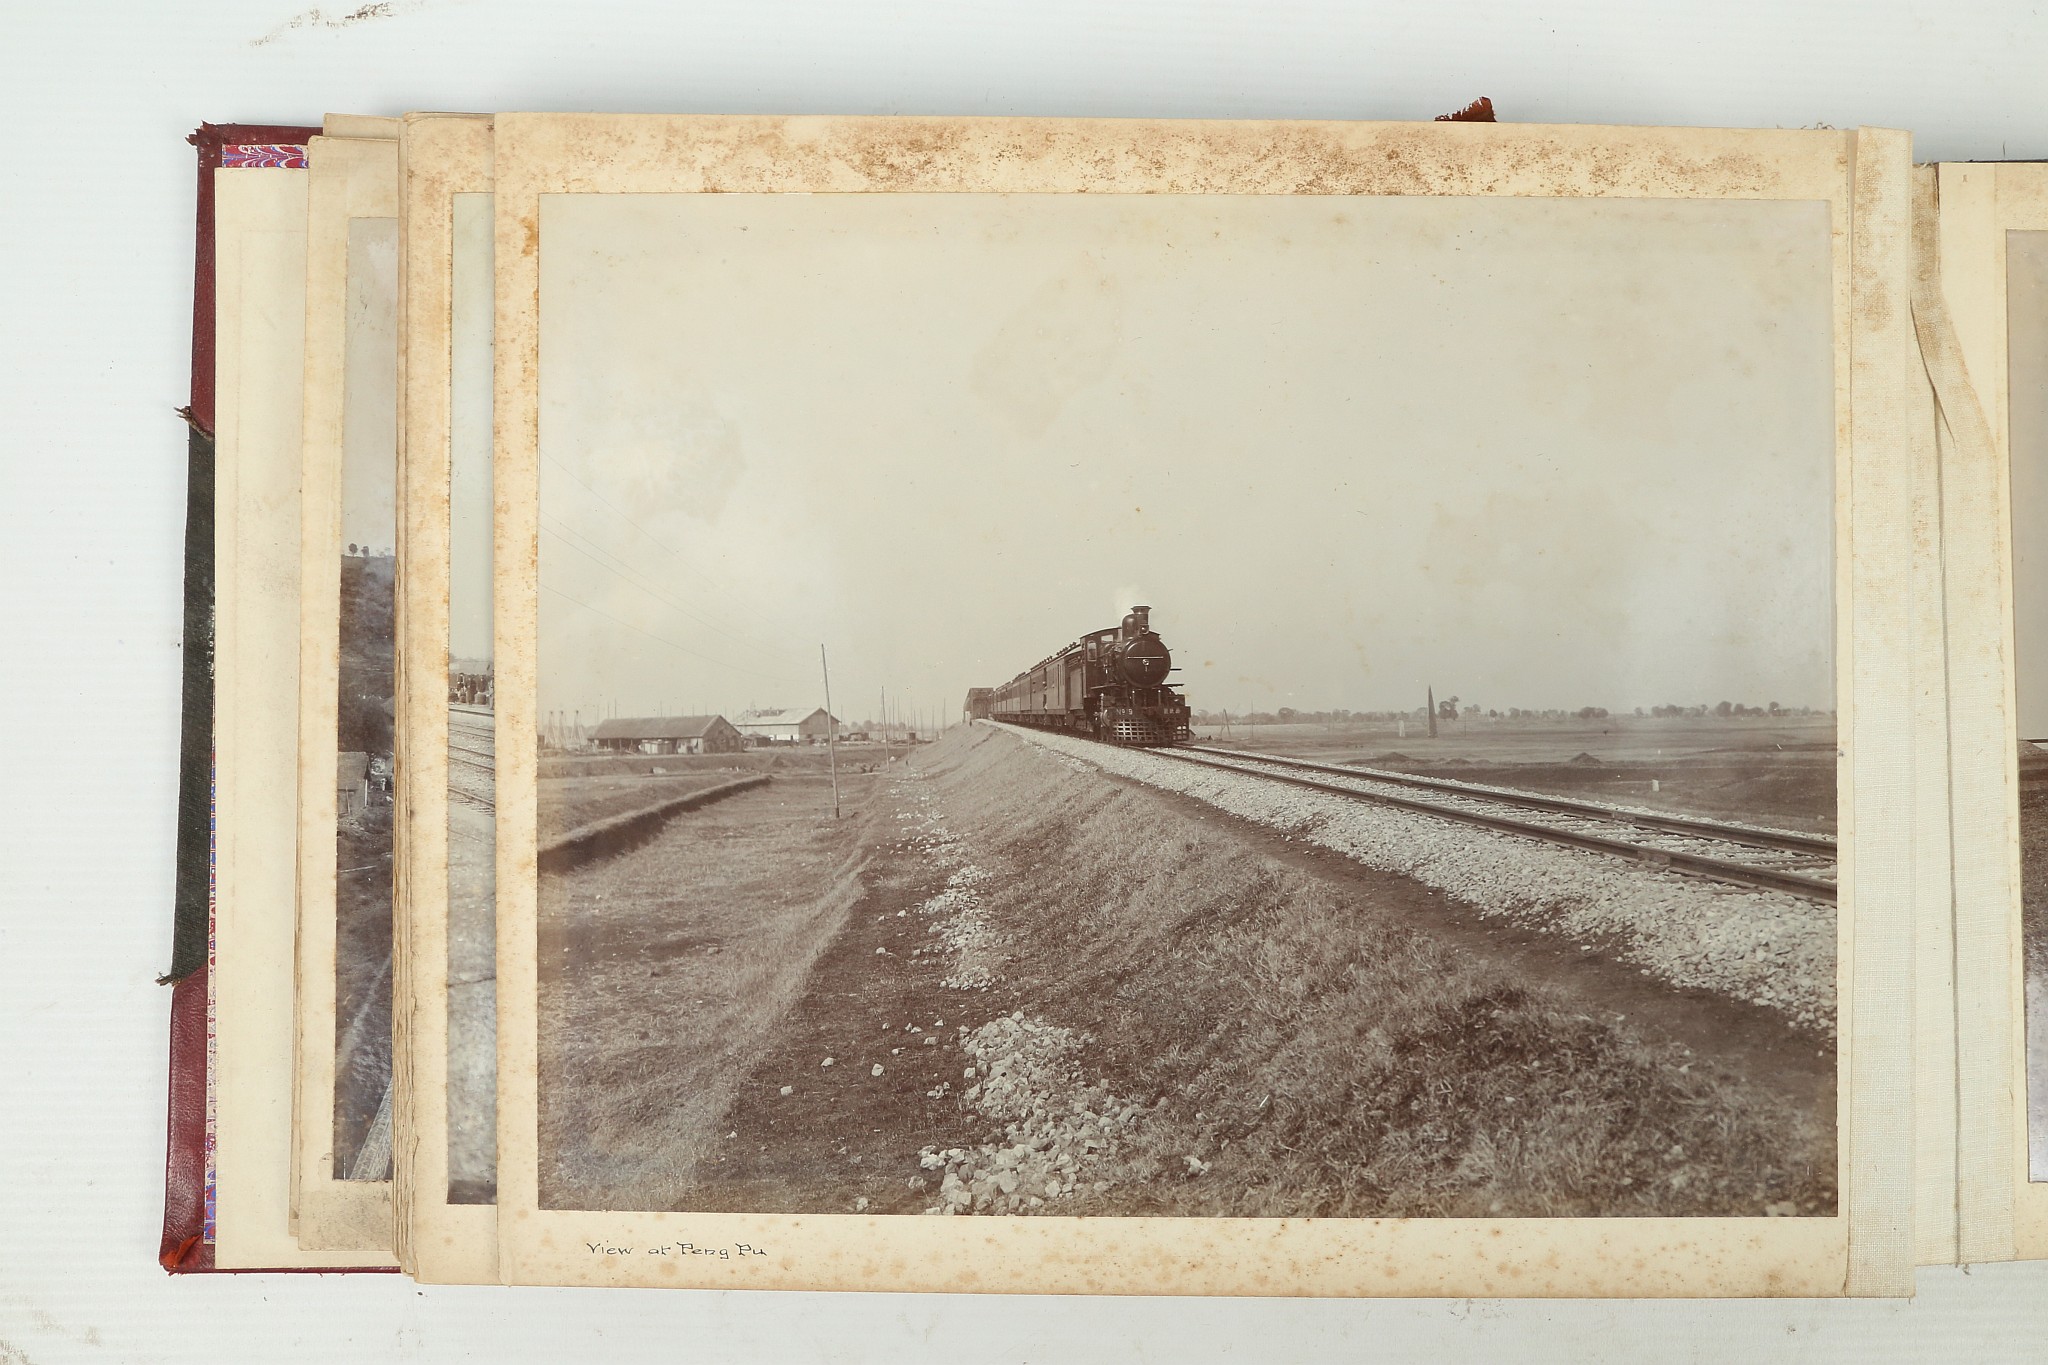 A PHOTOGRAPHIC ALBUM OF THE TIENTSIN-PUKOW RAILWAY - Image 32 of 60